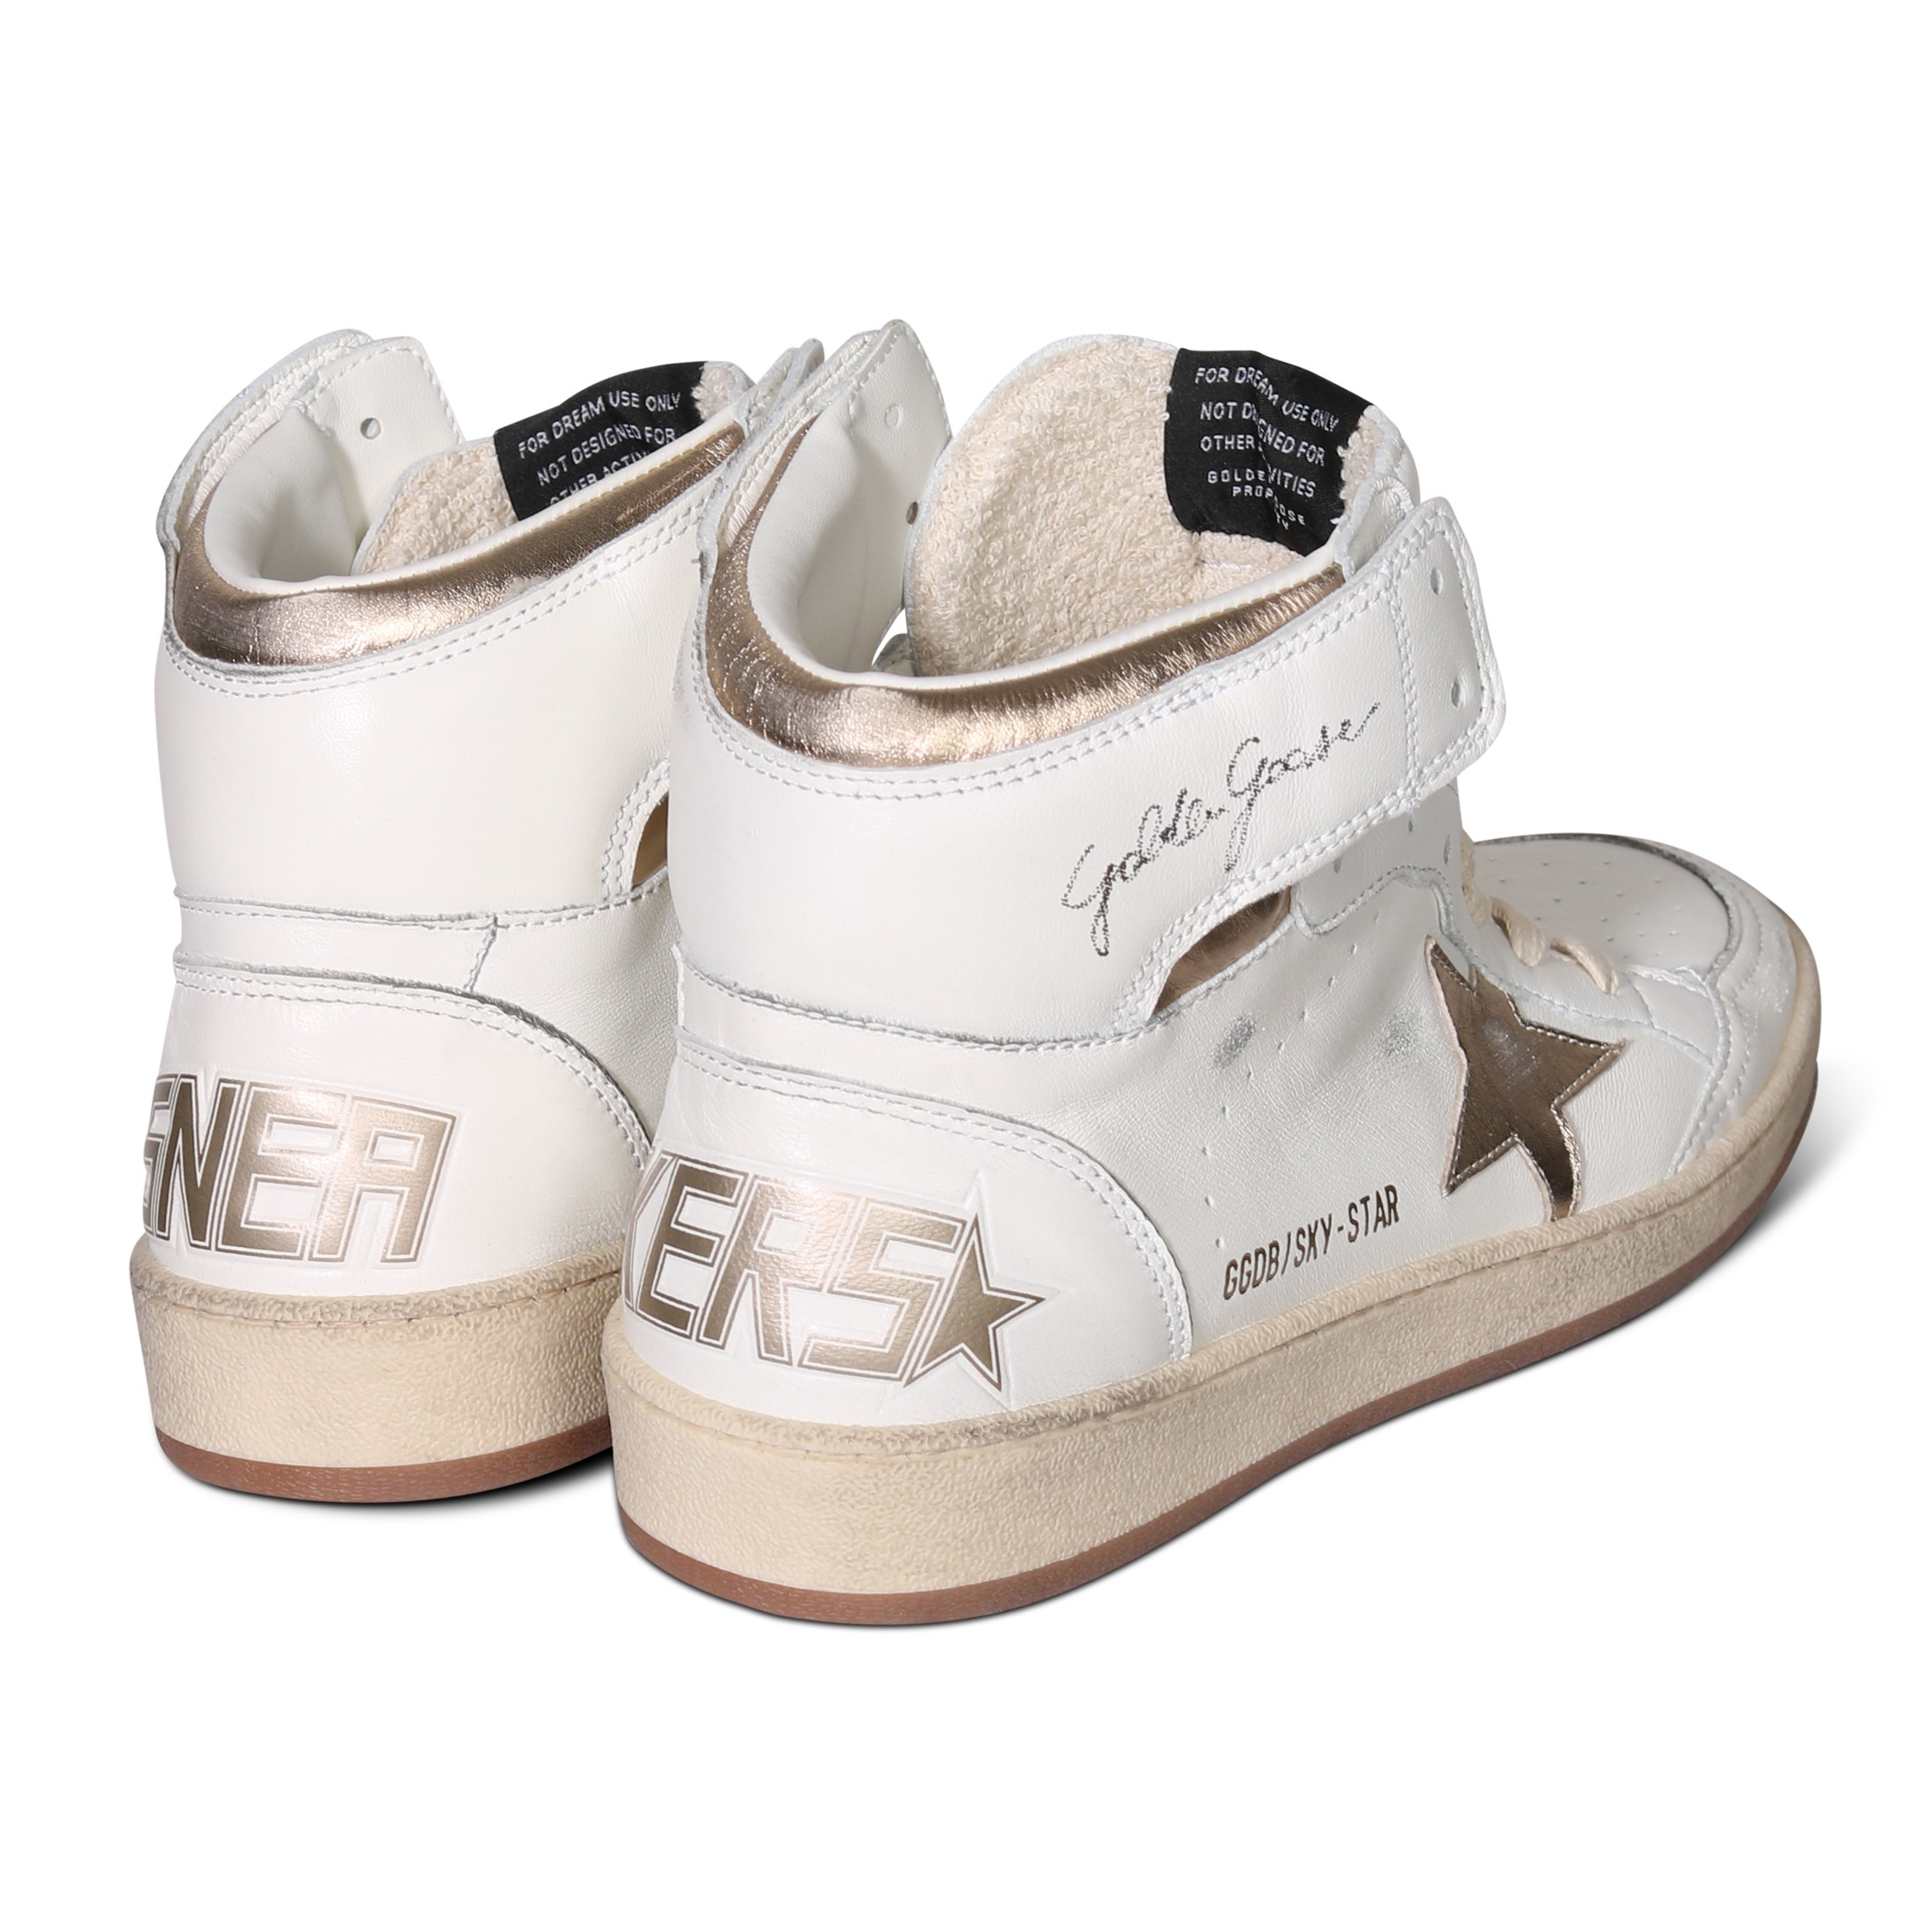 GOLDEN GOOSE Sneaker Sky Star in White/Gold Nappa 37